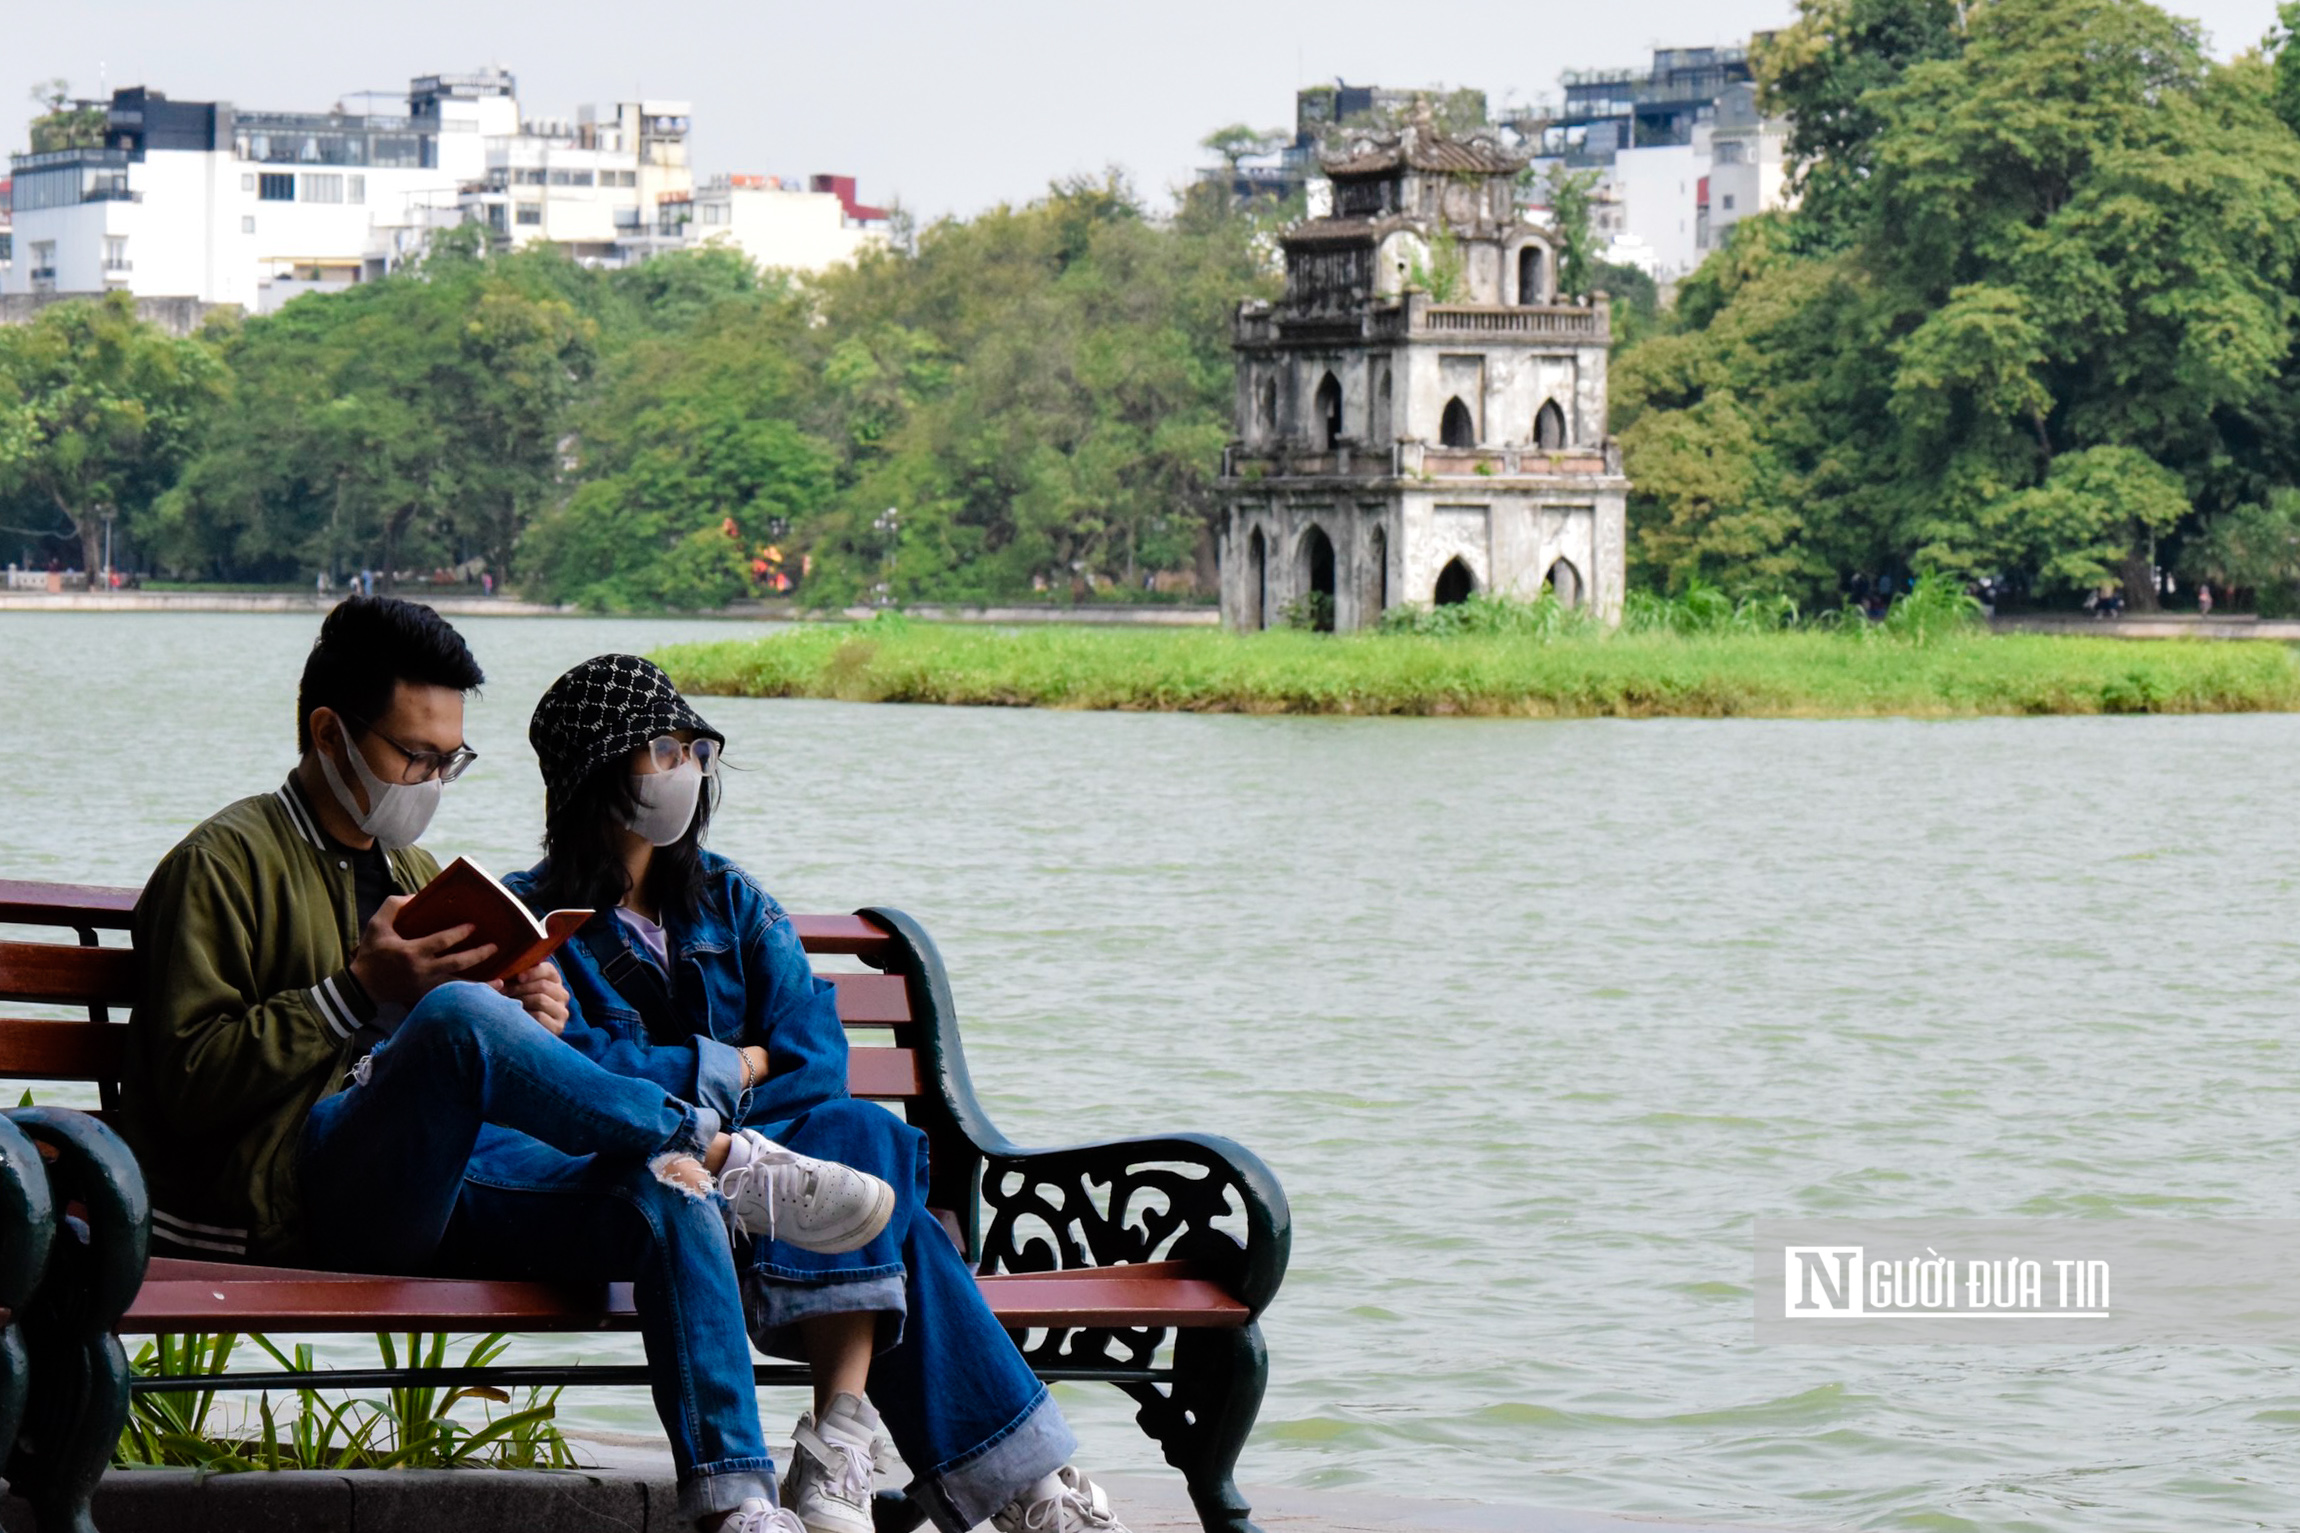 Sự kiện - Khu vực hồ Hoàn Kiếm, phố cổ Hà Nội là khu du lịch cấp Thành phố